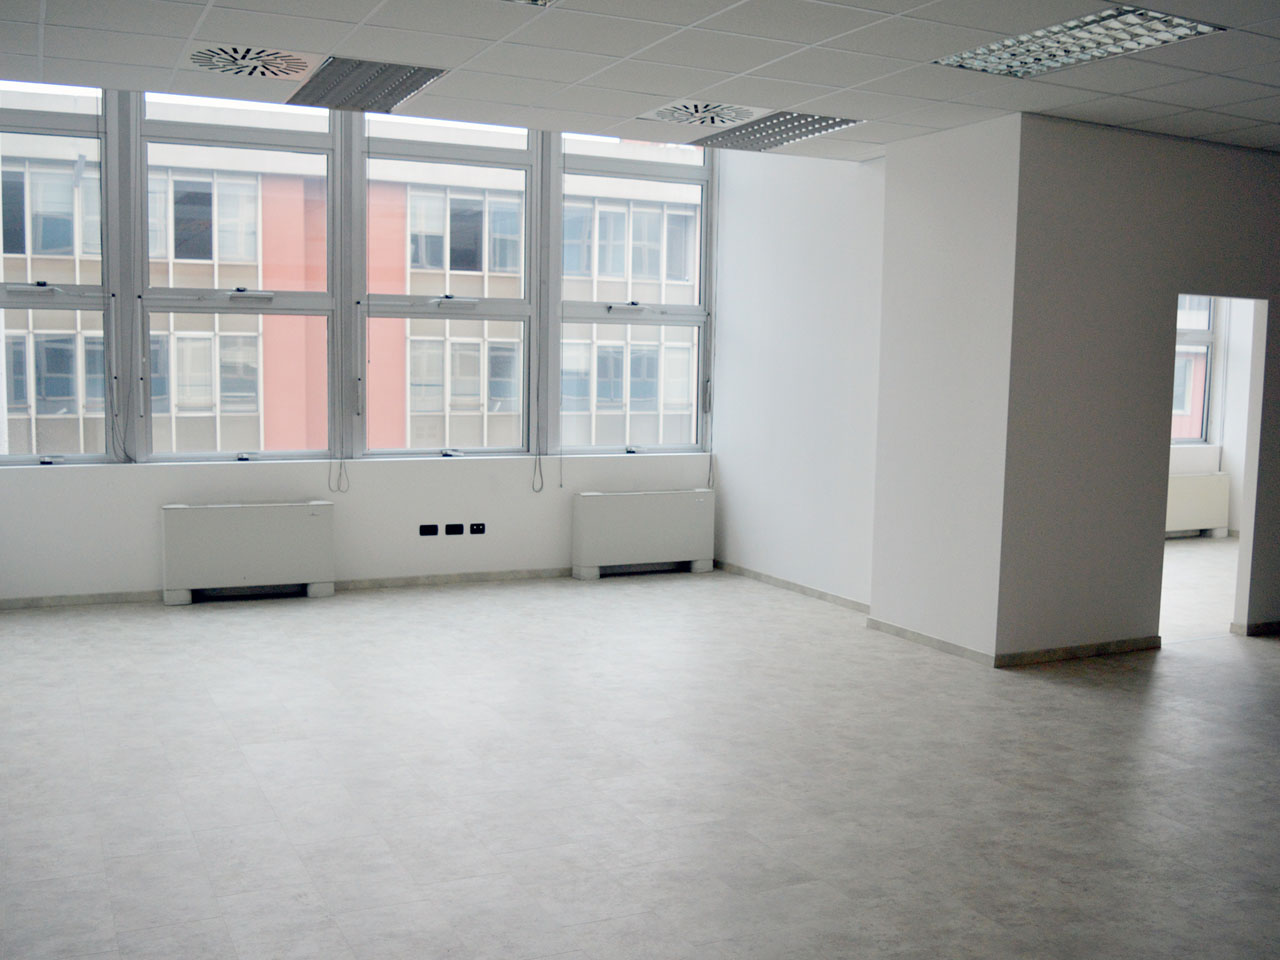 Ufficio lato ovest - ufficio in affitto 750 mq Milano zona Mecenate